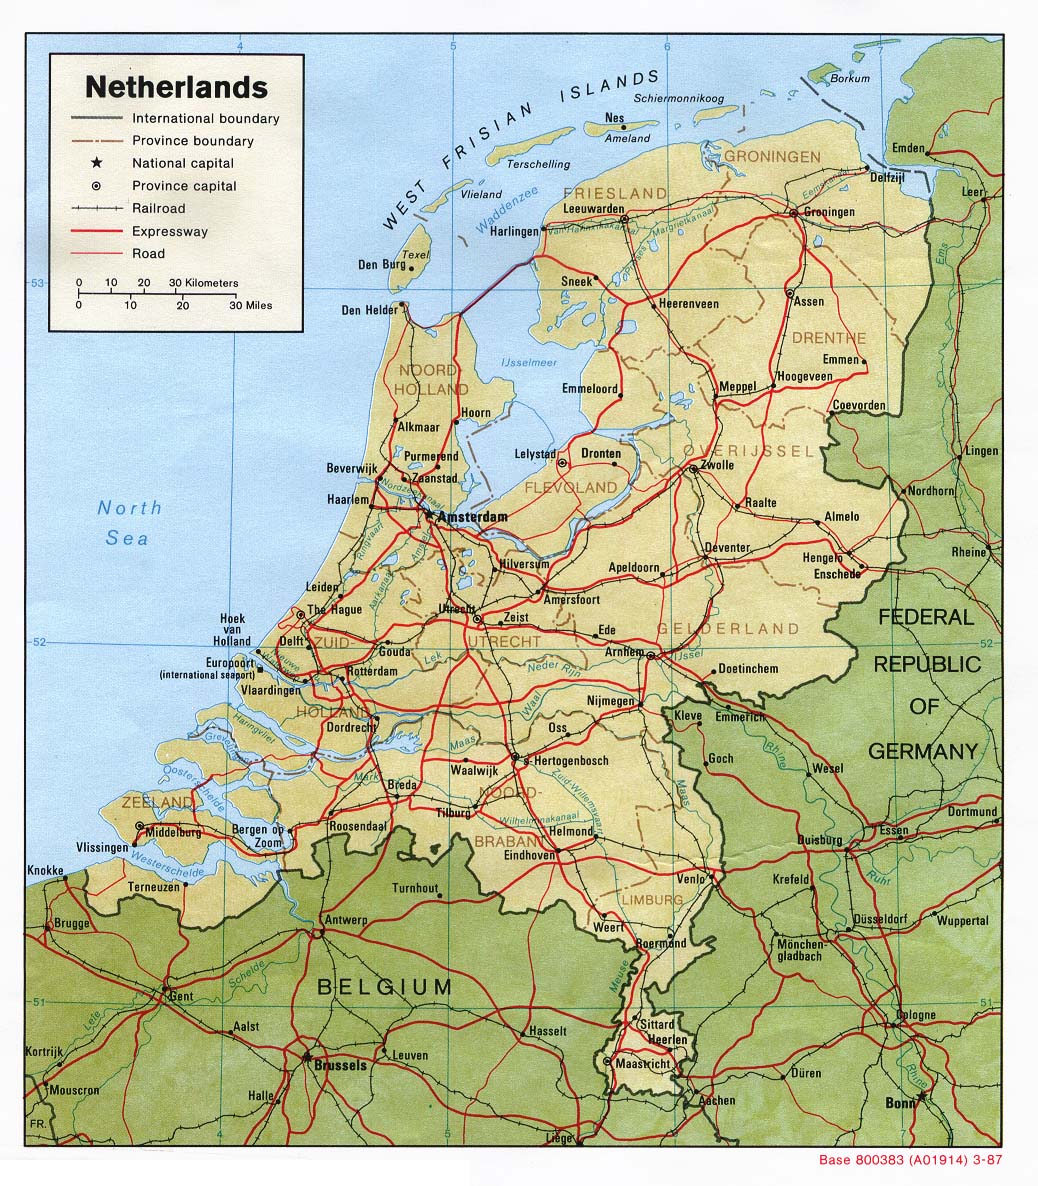 Mapa Físico de los Países Bajos 1987 - Tamaño completo | Gifex